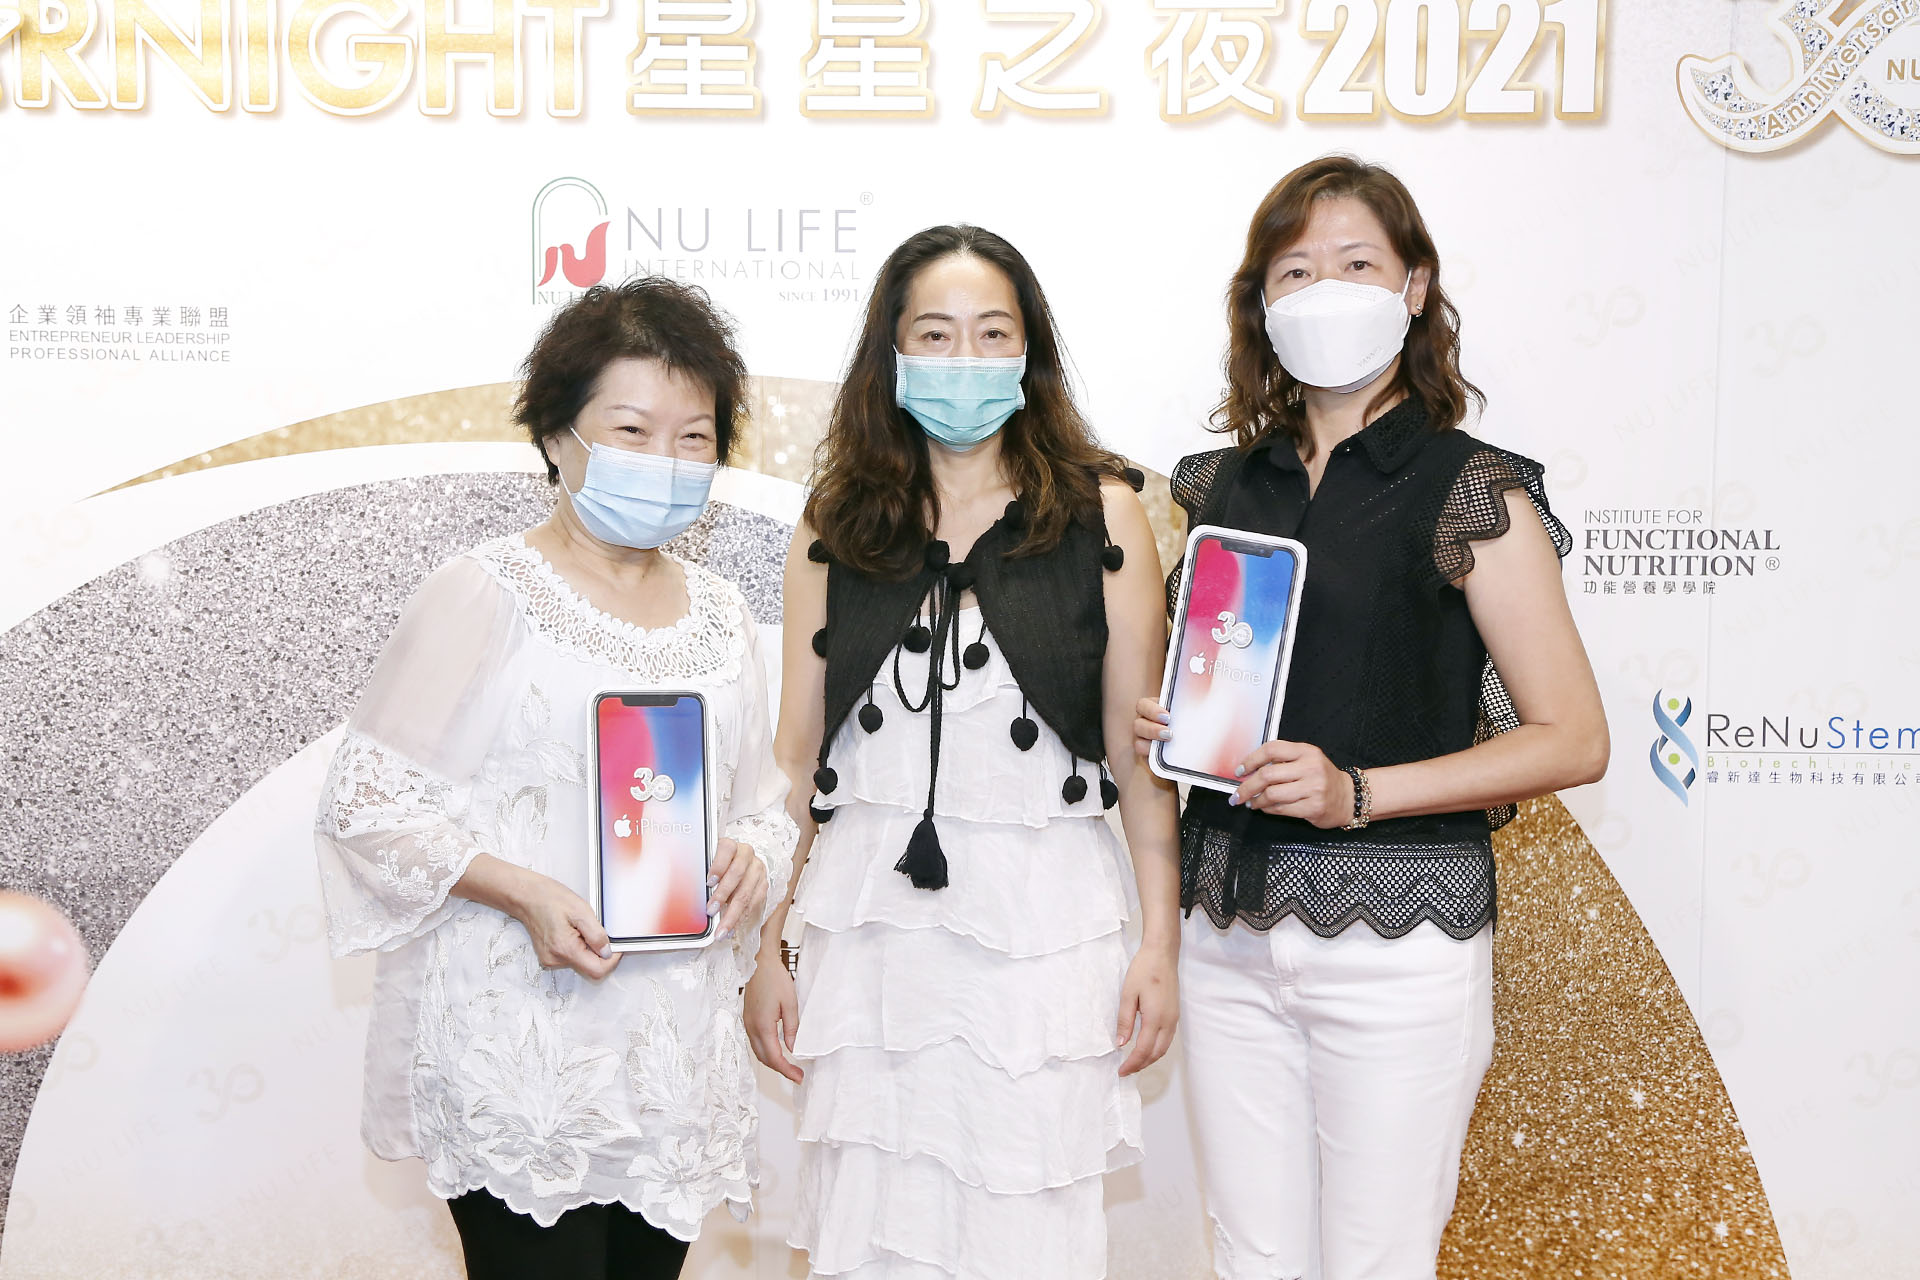 月月狂Phone 月月送NU LIFE 30週年iphone 大抽獎得獎者 – 林巧珍女士(左)及姚淑慧女士(右)